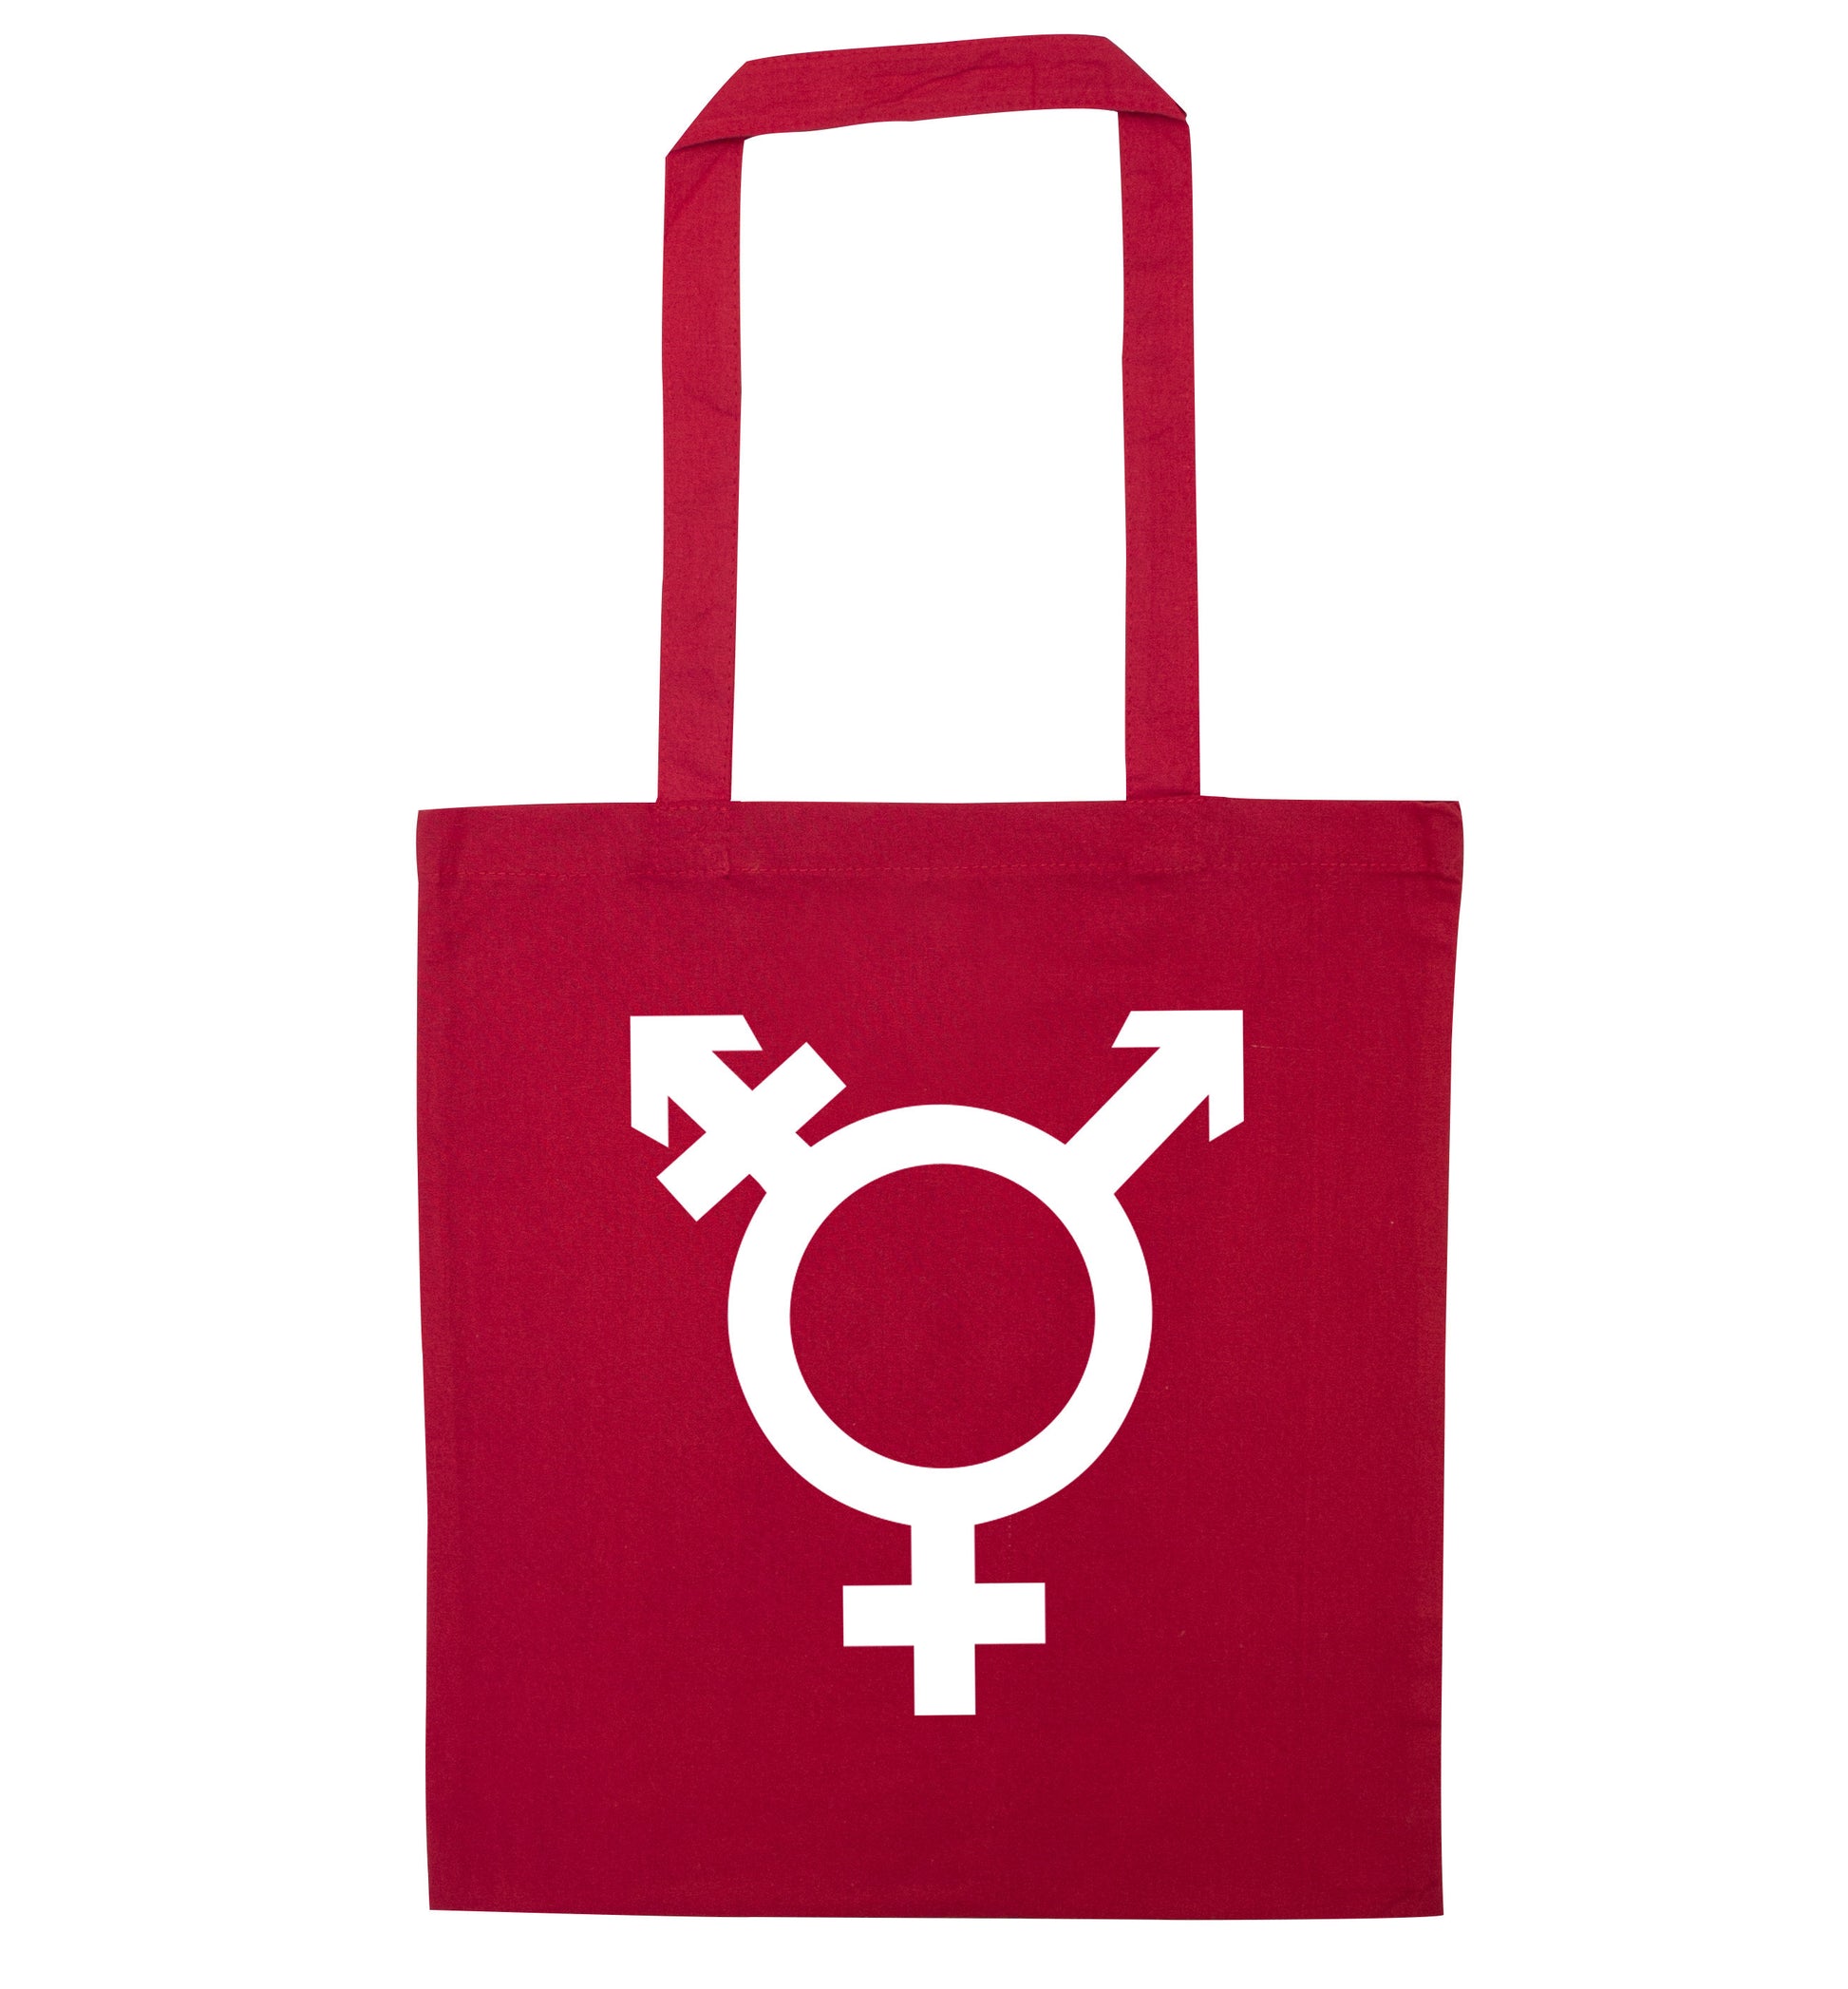 Gender neutral symbol large red tote bag